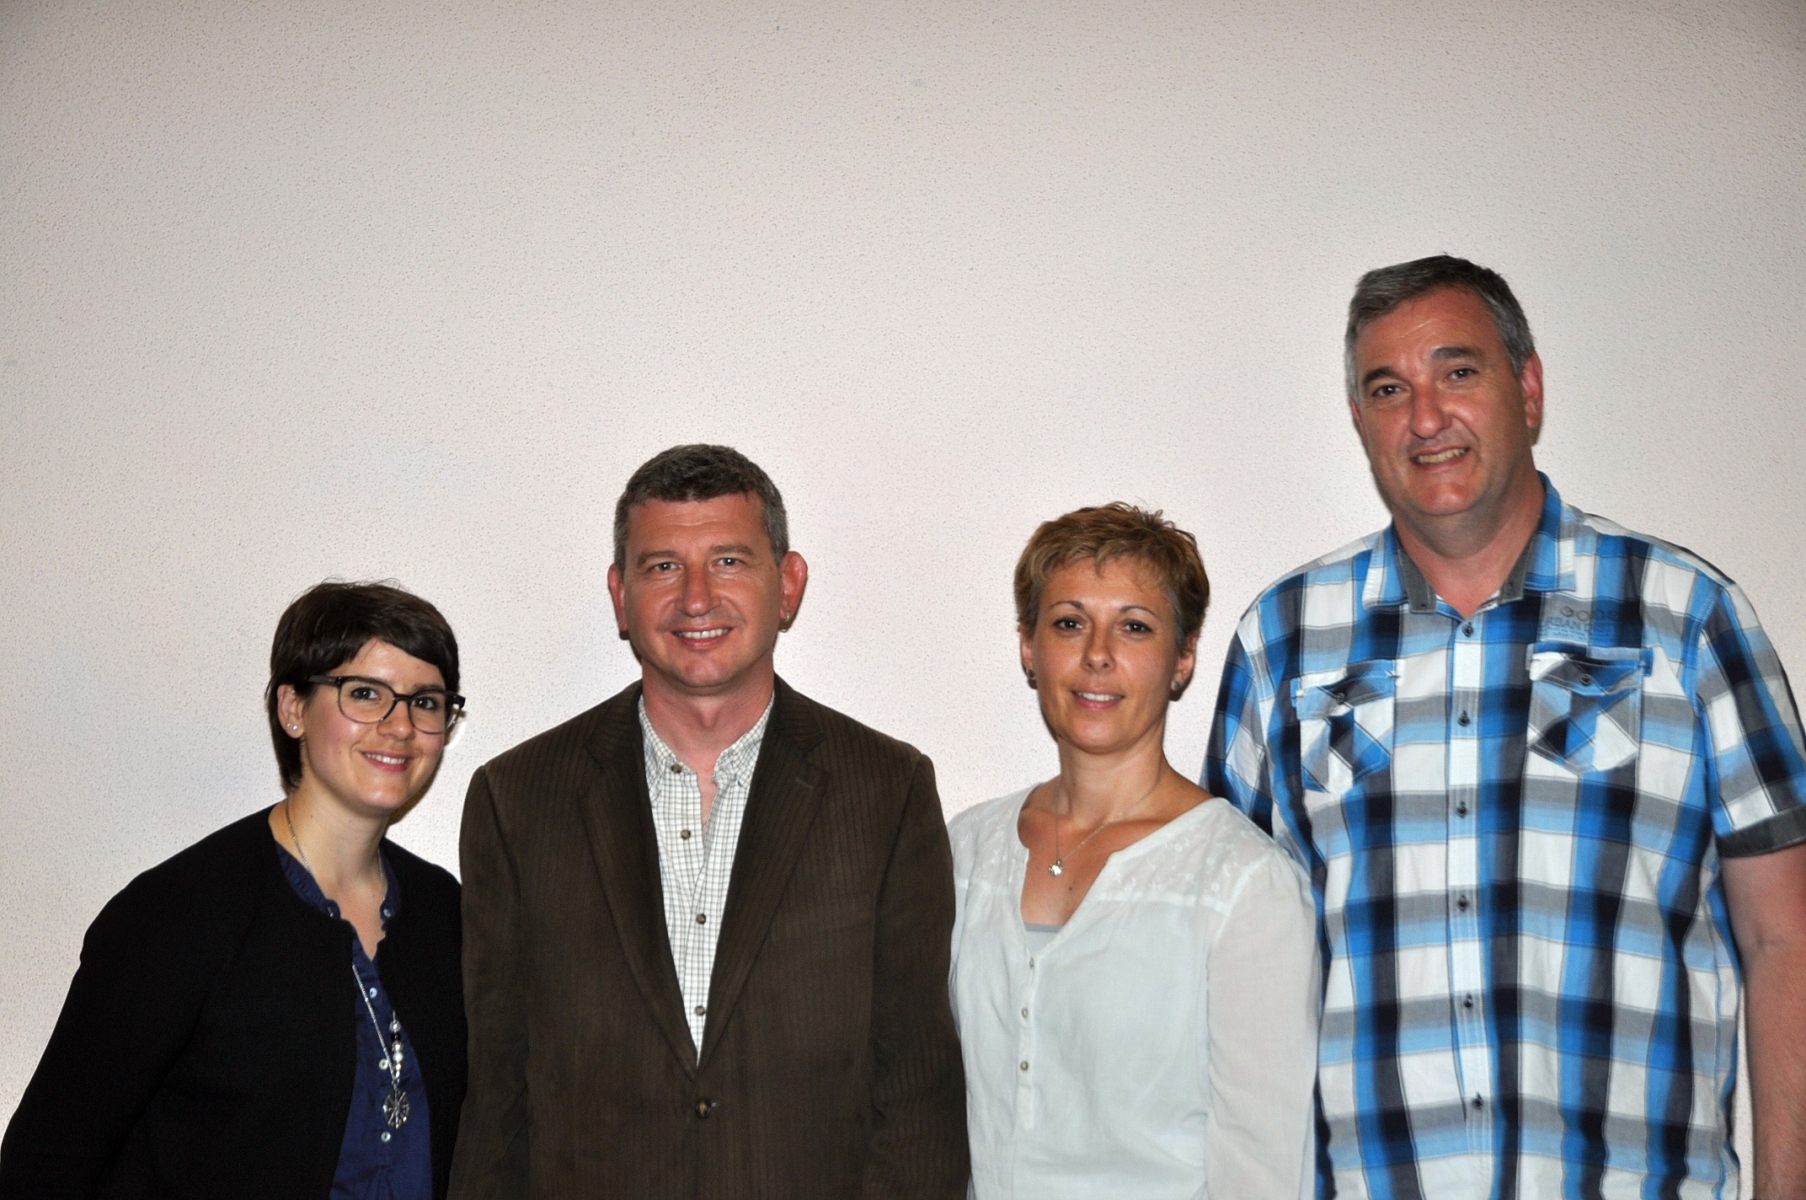 De gauche à droite: Déborah Vergères-Zuber, Jérôme Pellissier, Martine Perruchoud Hofstädter et Cédric Rudaz.